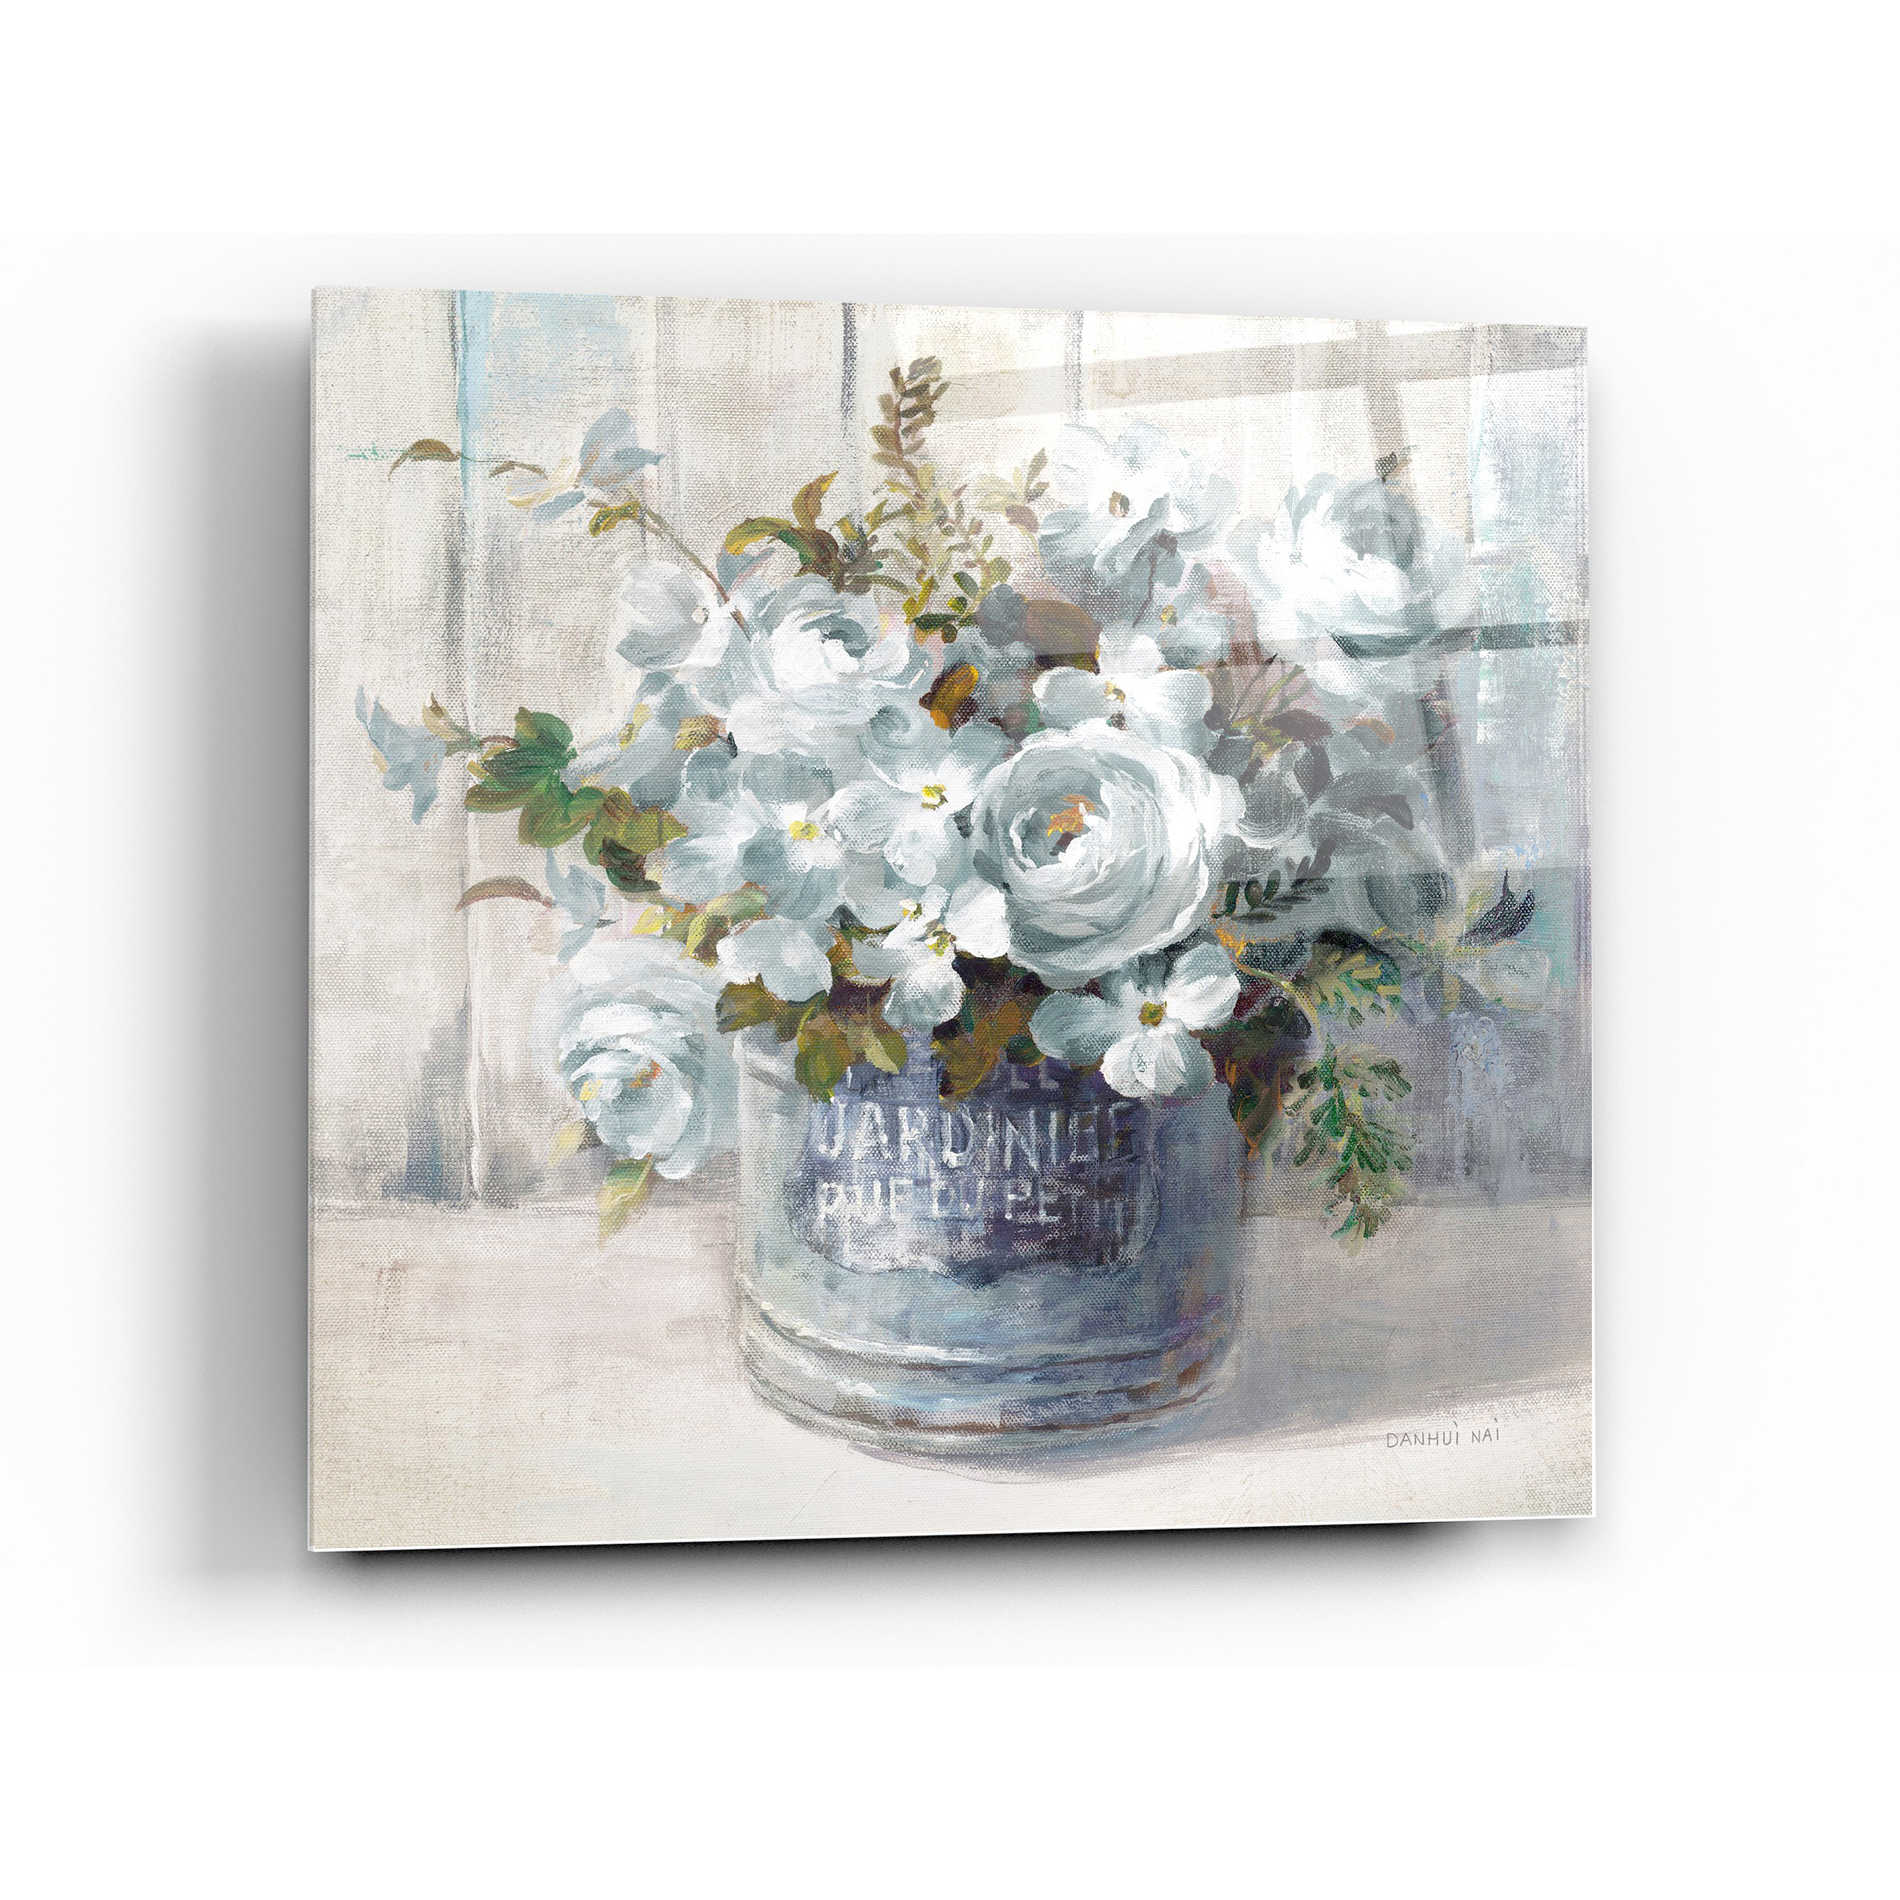 Epic Art 'Garden Blooms I Blue Crop' by Danhui Nai, Acrylic Glass Wall Art,36x36